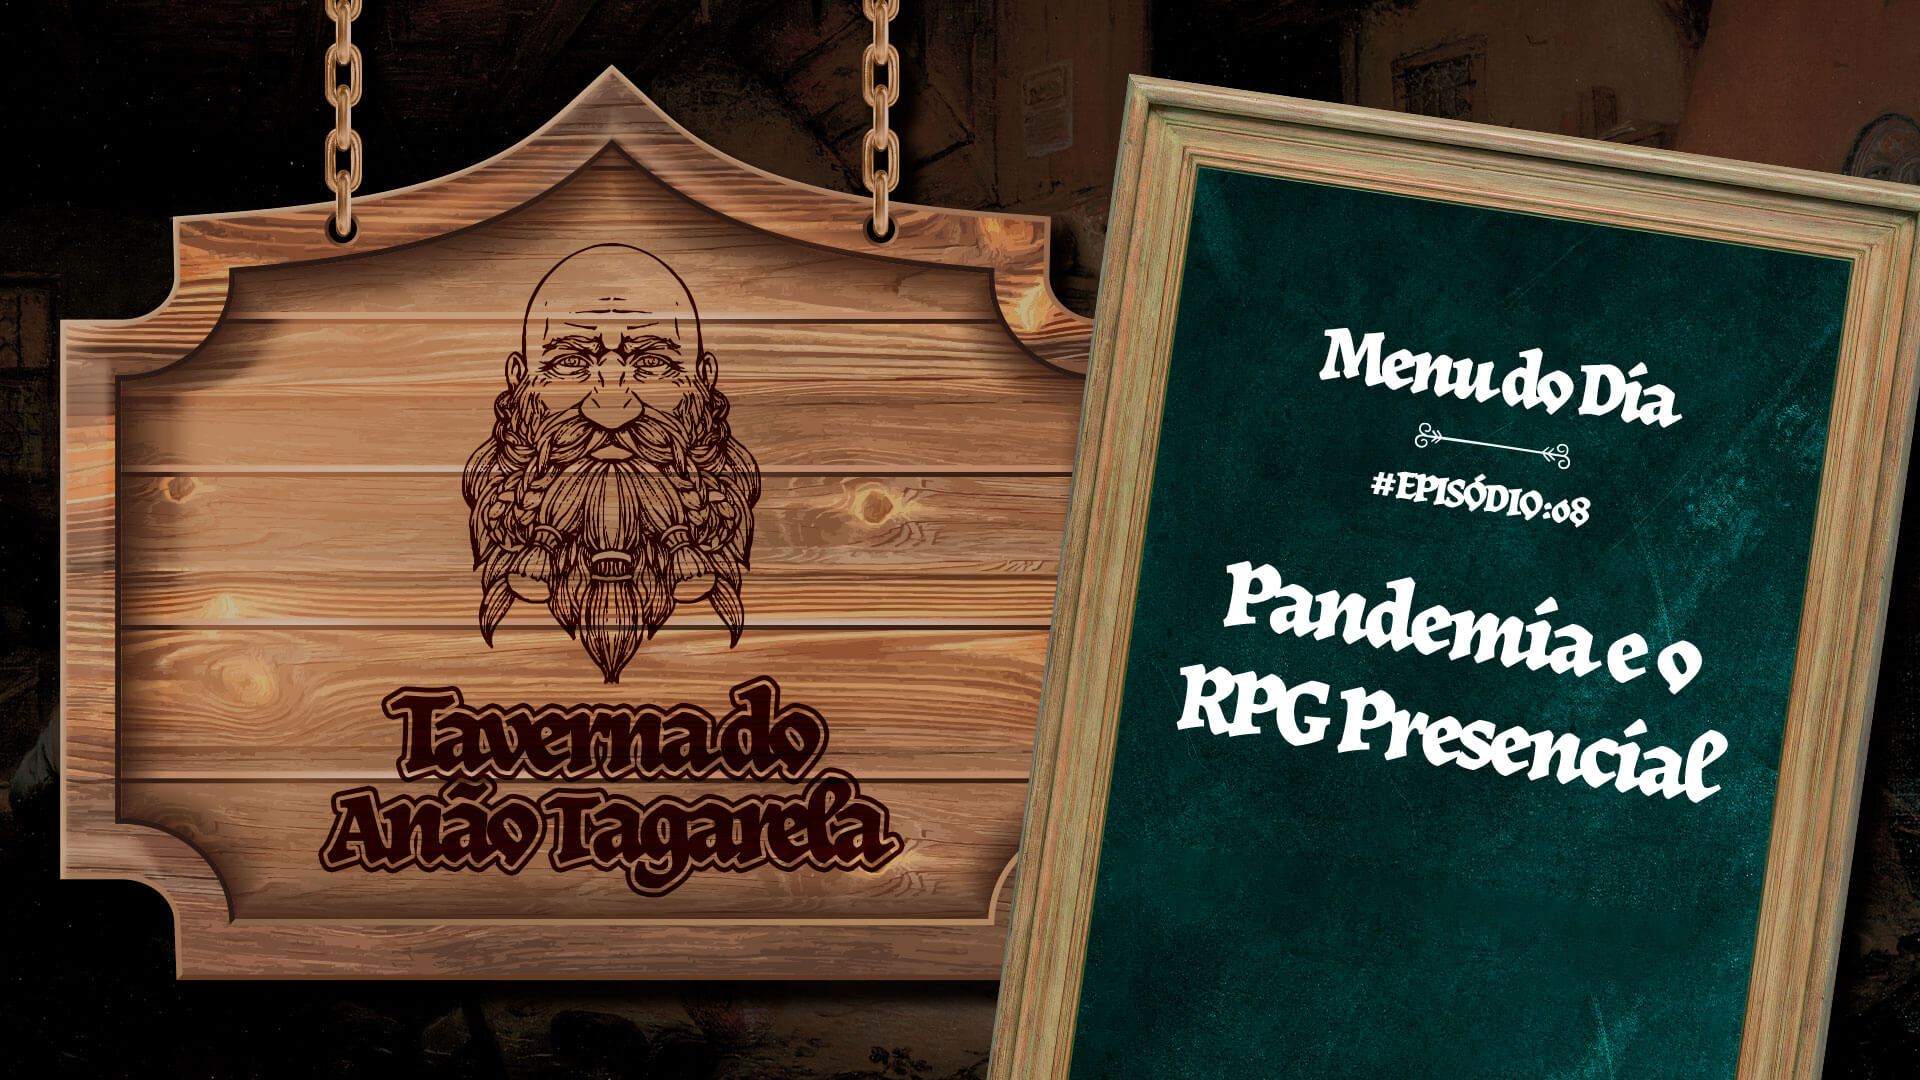 Pandemia e o RPG Presencial - Taverna do Anão Tagarela - 08